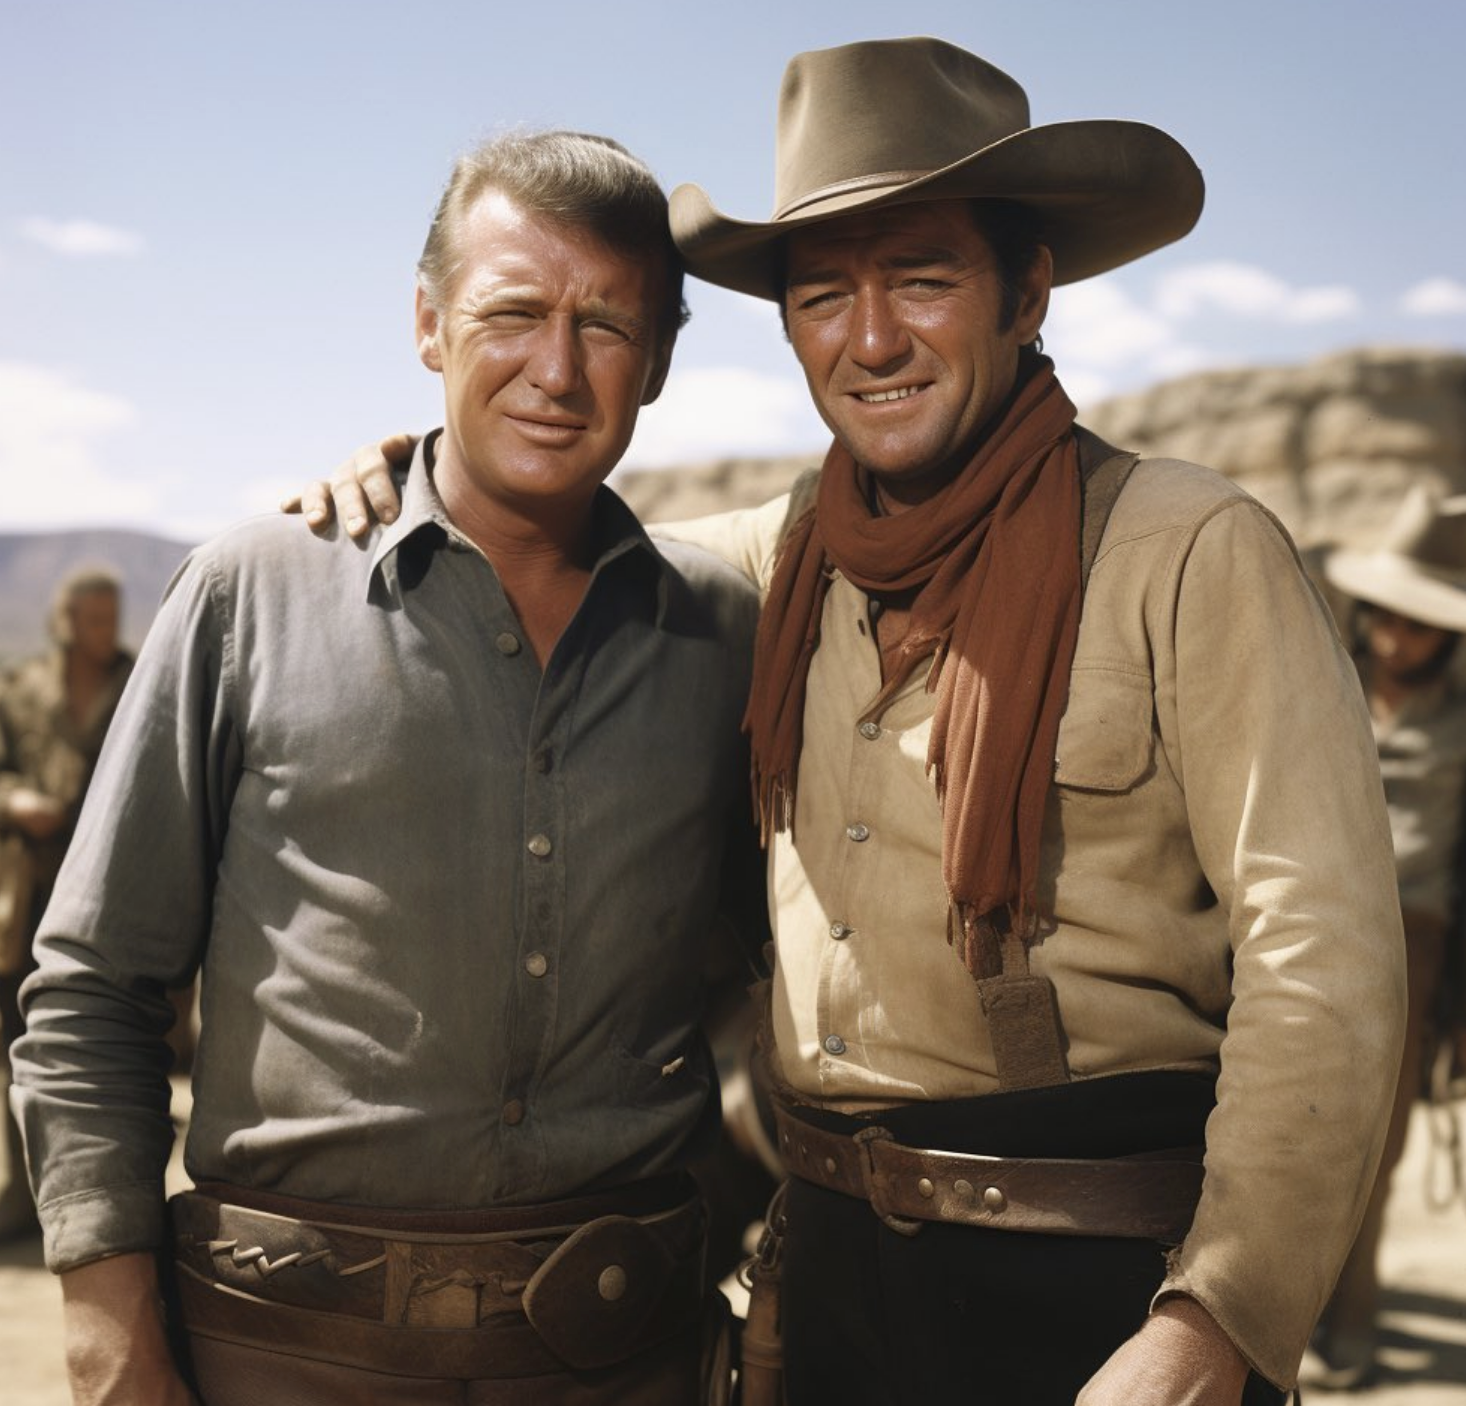 Trump posing in the desert with John Wayne